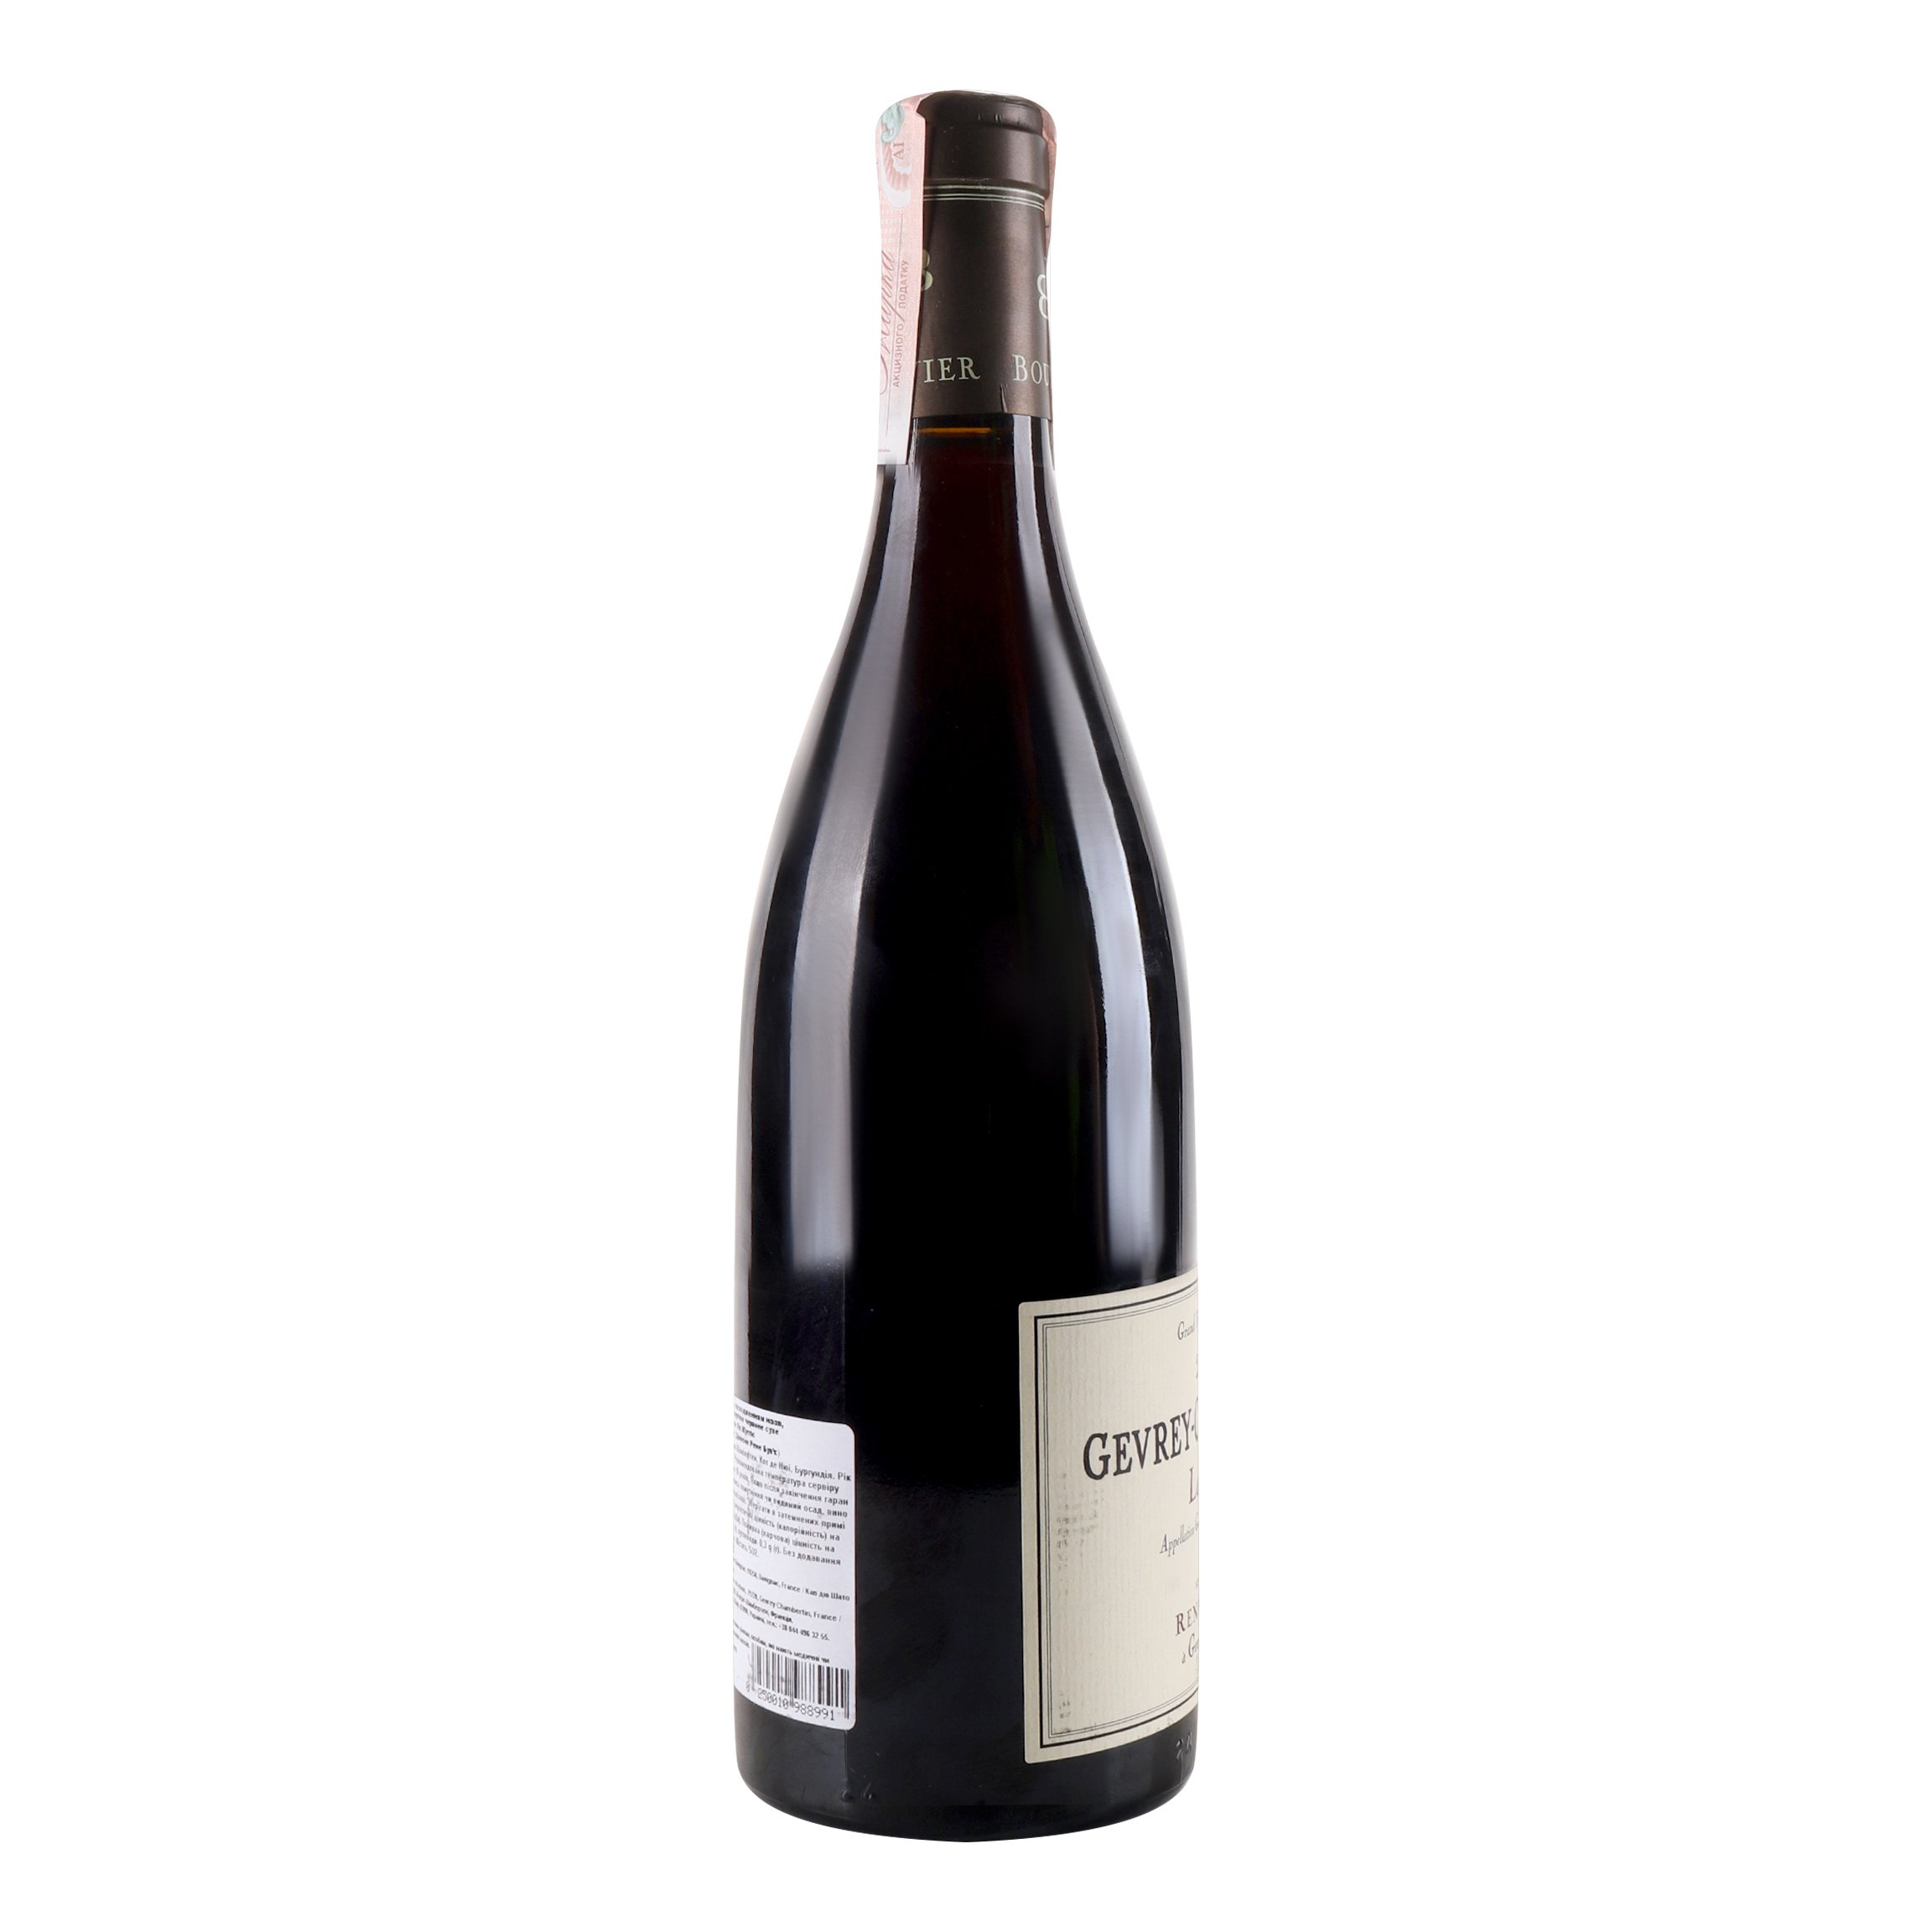 Вино Domaine Rene Bouvier Gevrey-Chambertin La Justice 2016 АОС/AOP, червоне, сухе, 13%, 0,75 л (776106) - фото 3